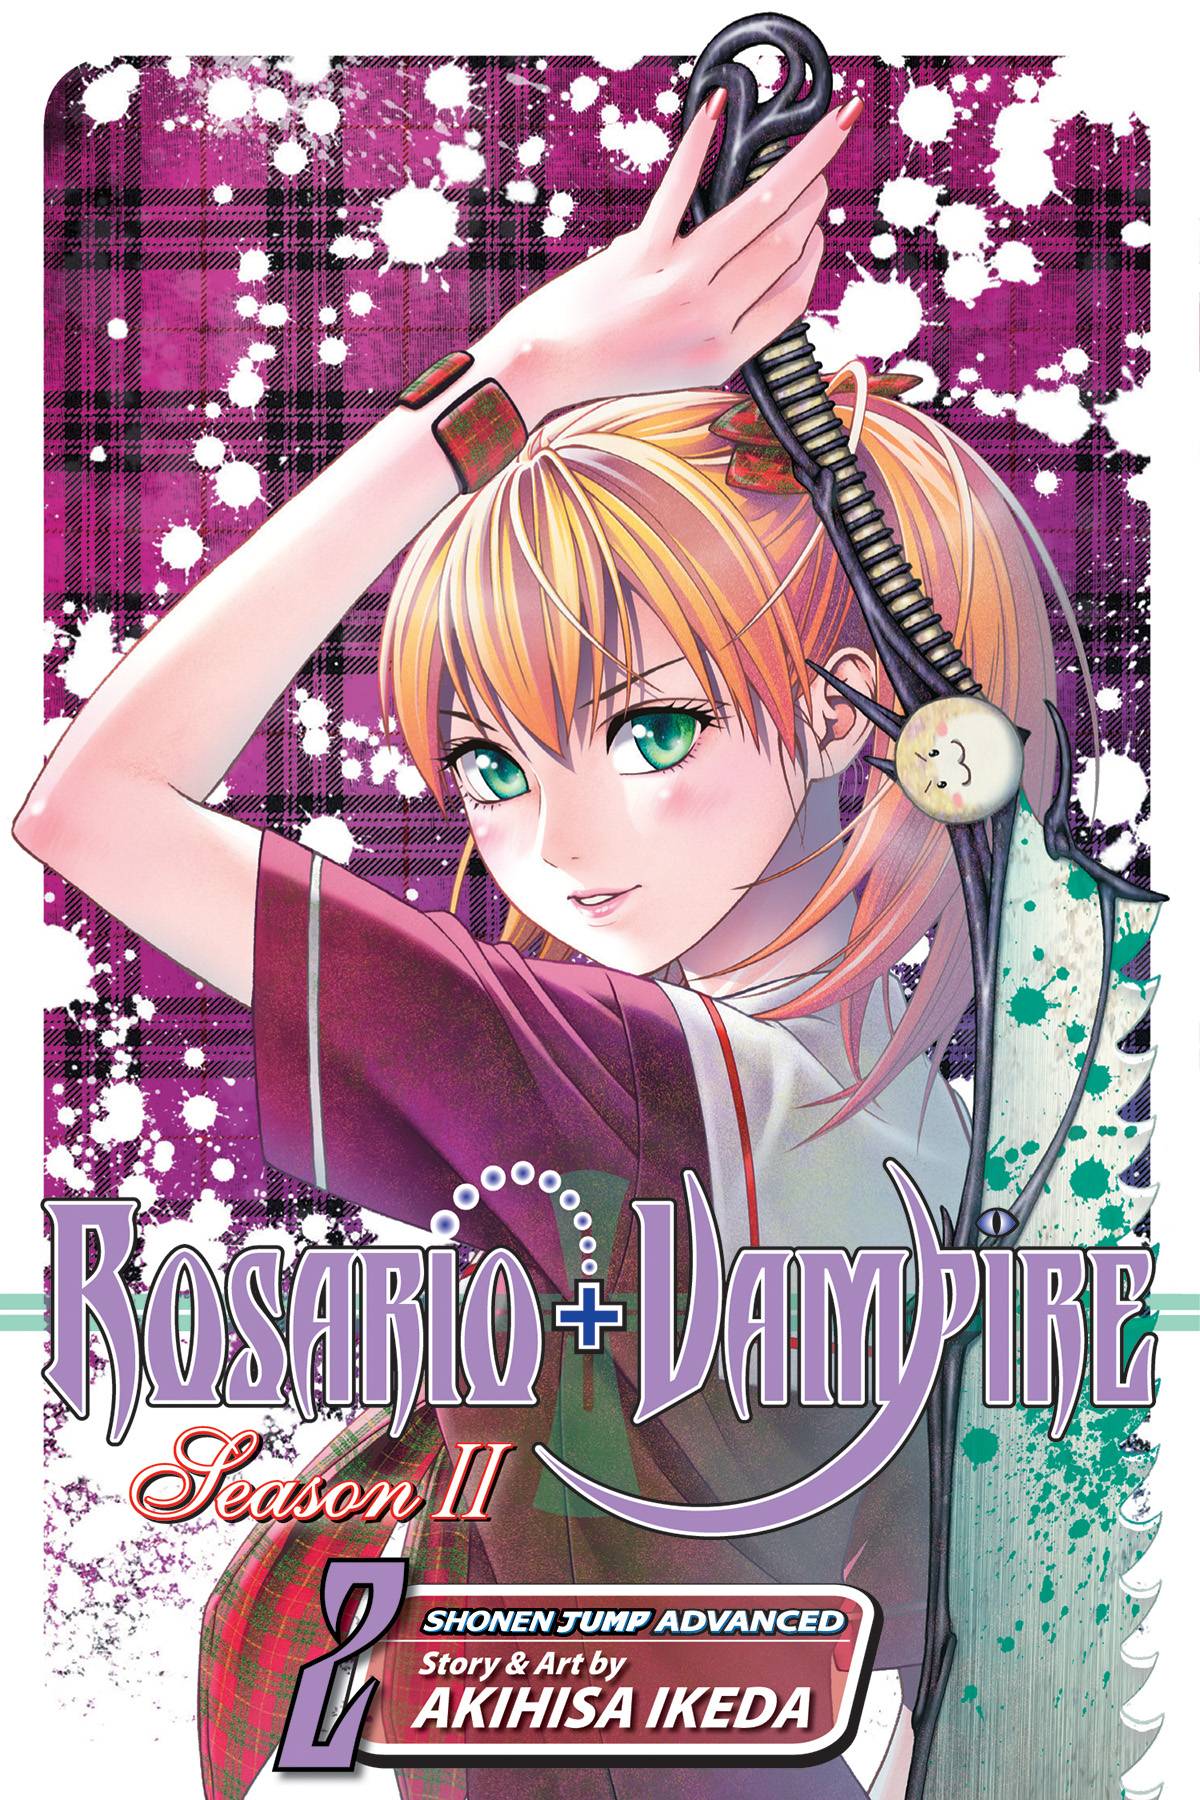 Rosario Vampire Season II Manga Volume 2